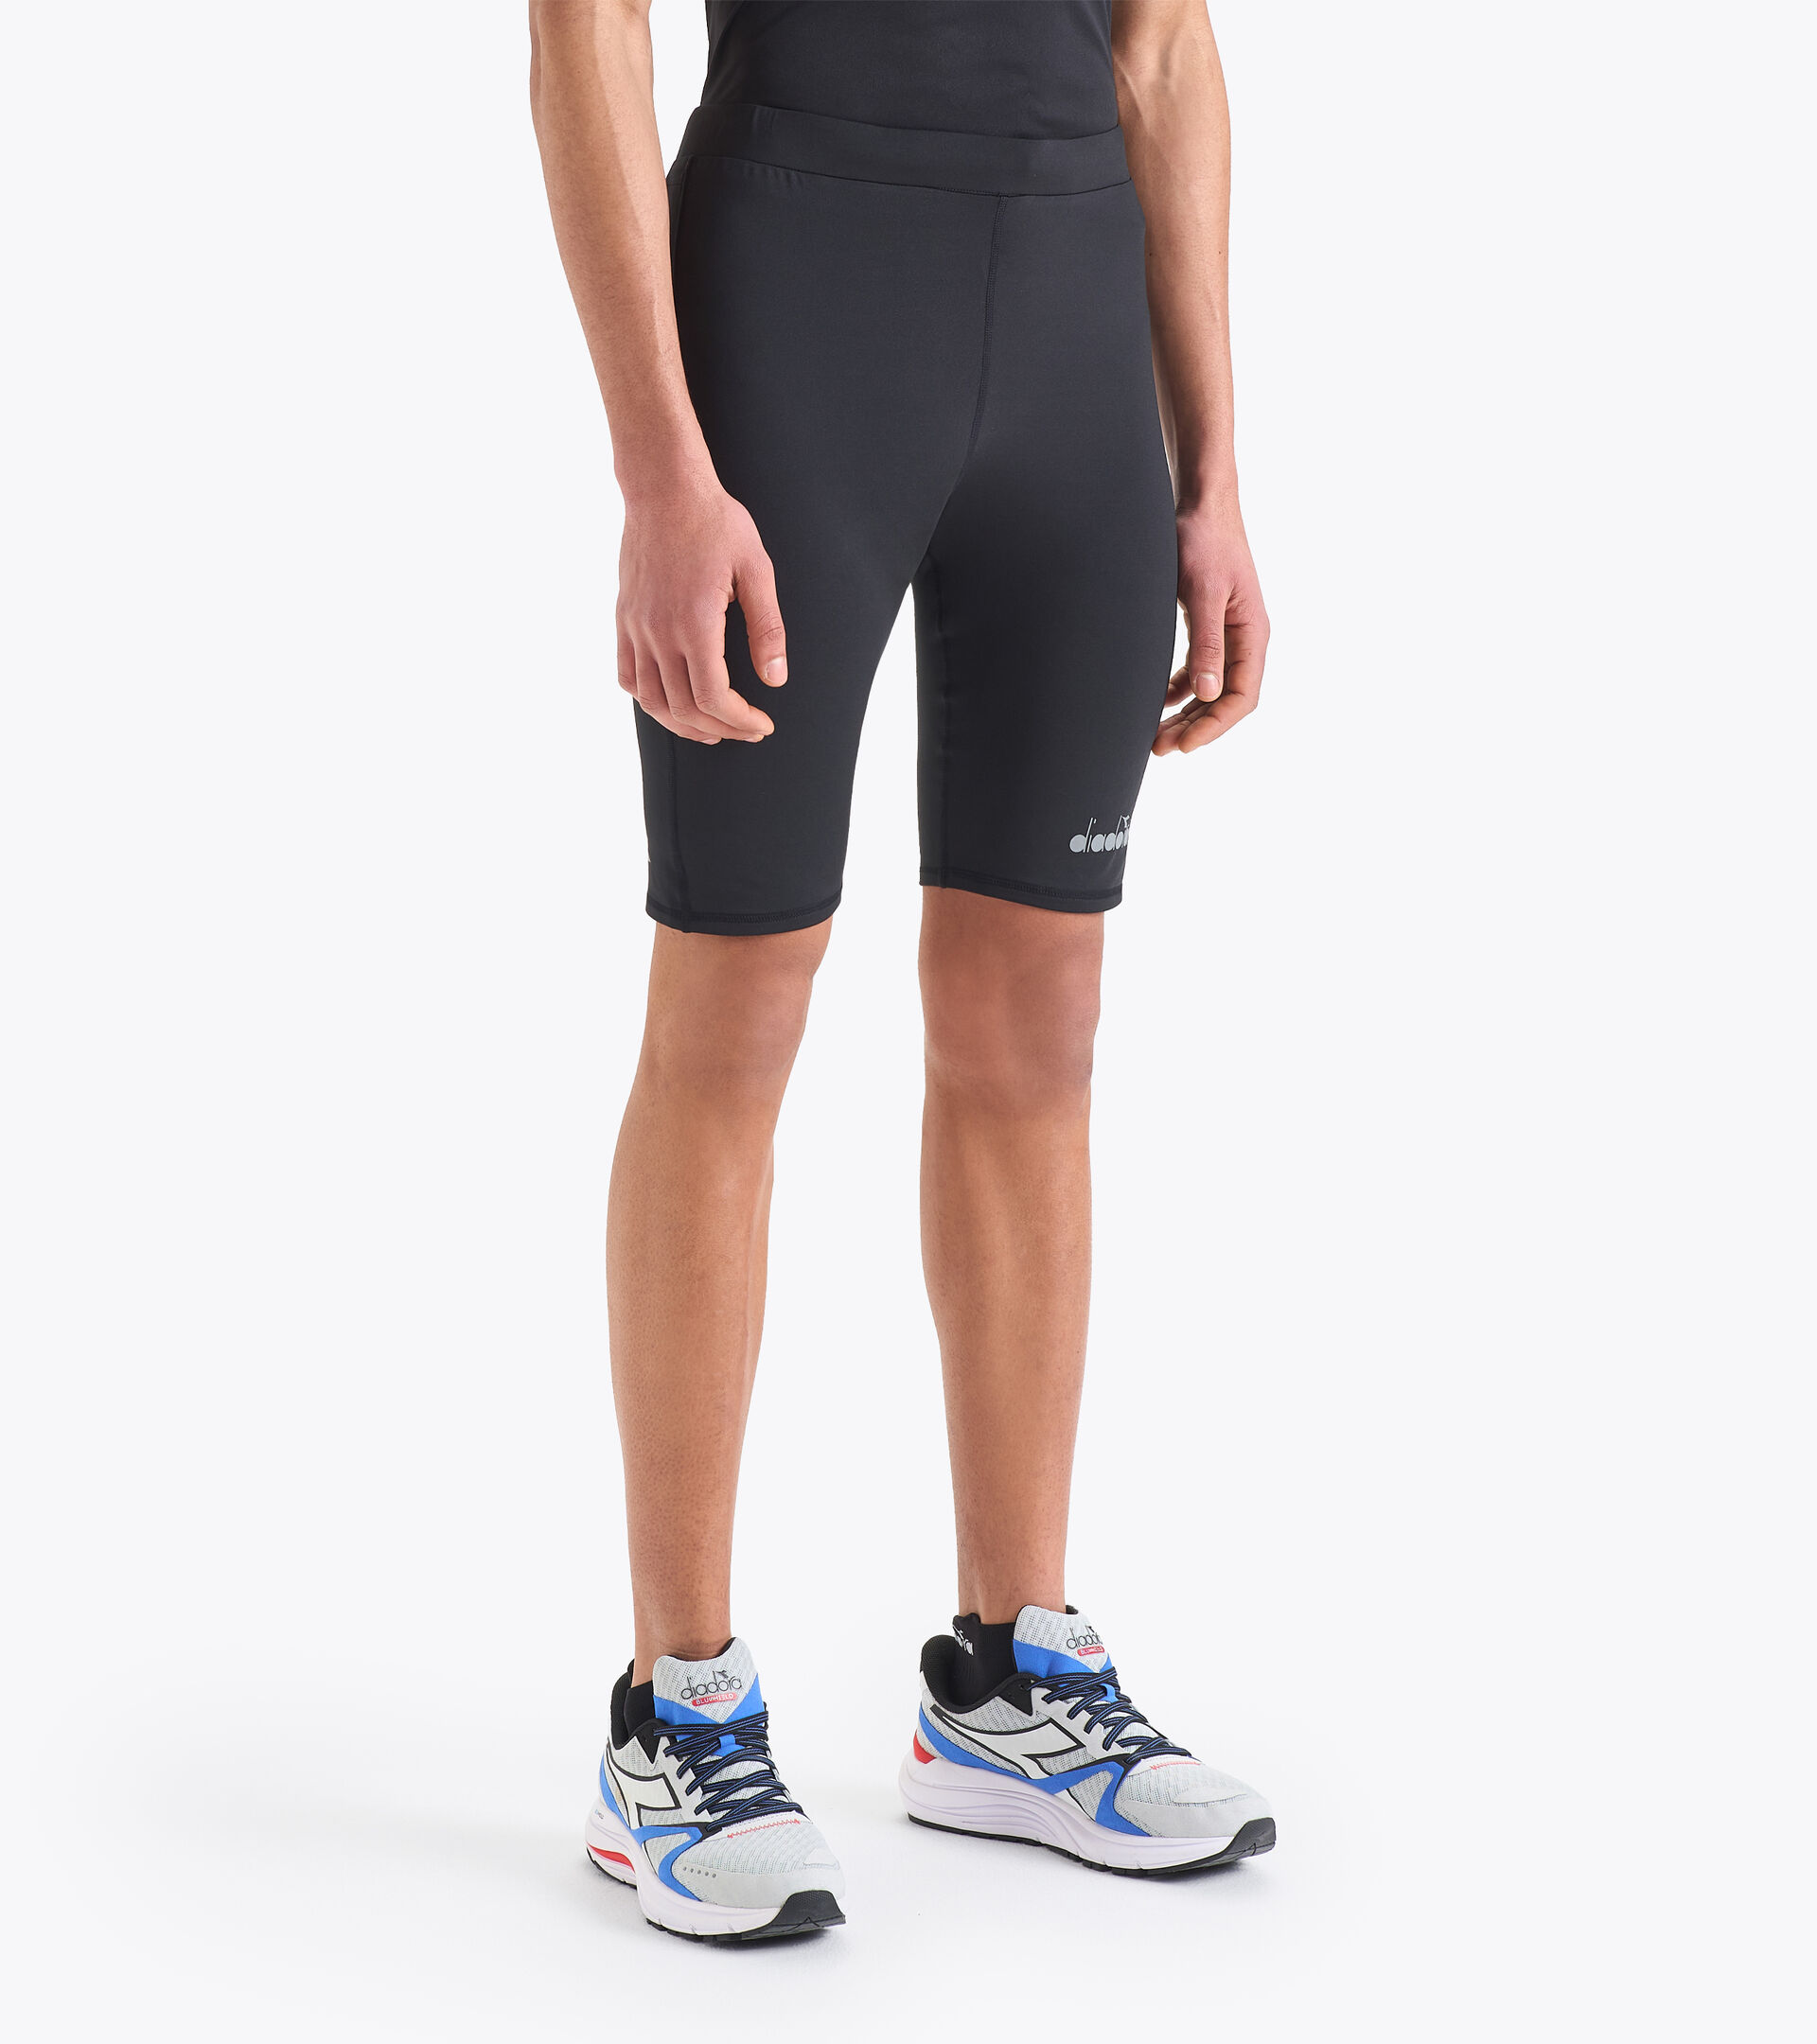 SHORT TIGHTS Running shorts - Men - Diadora Online Store CA